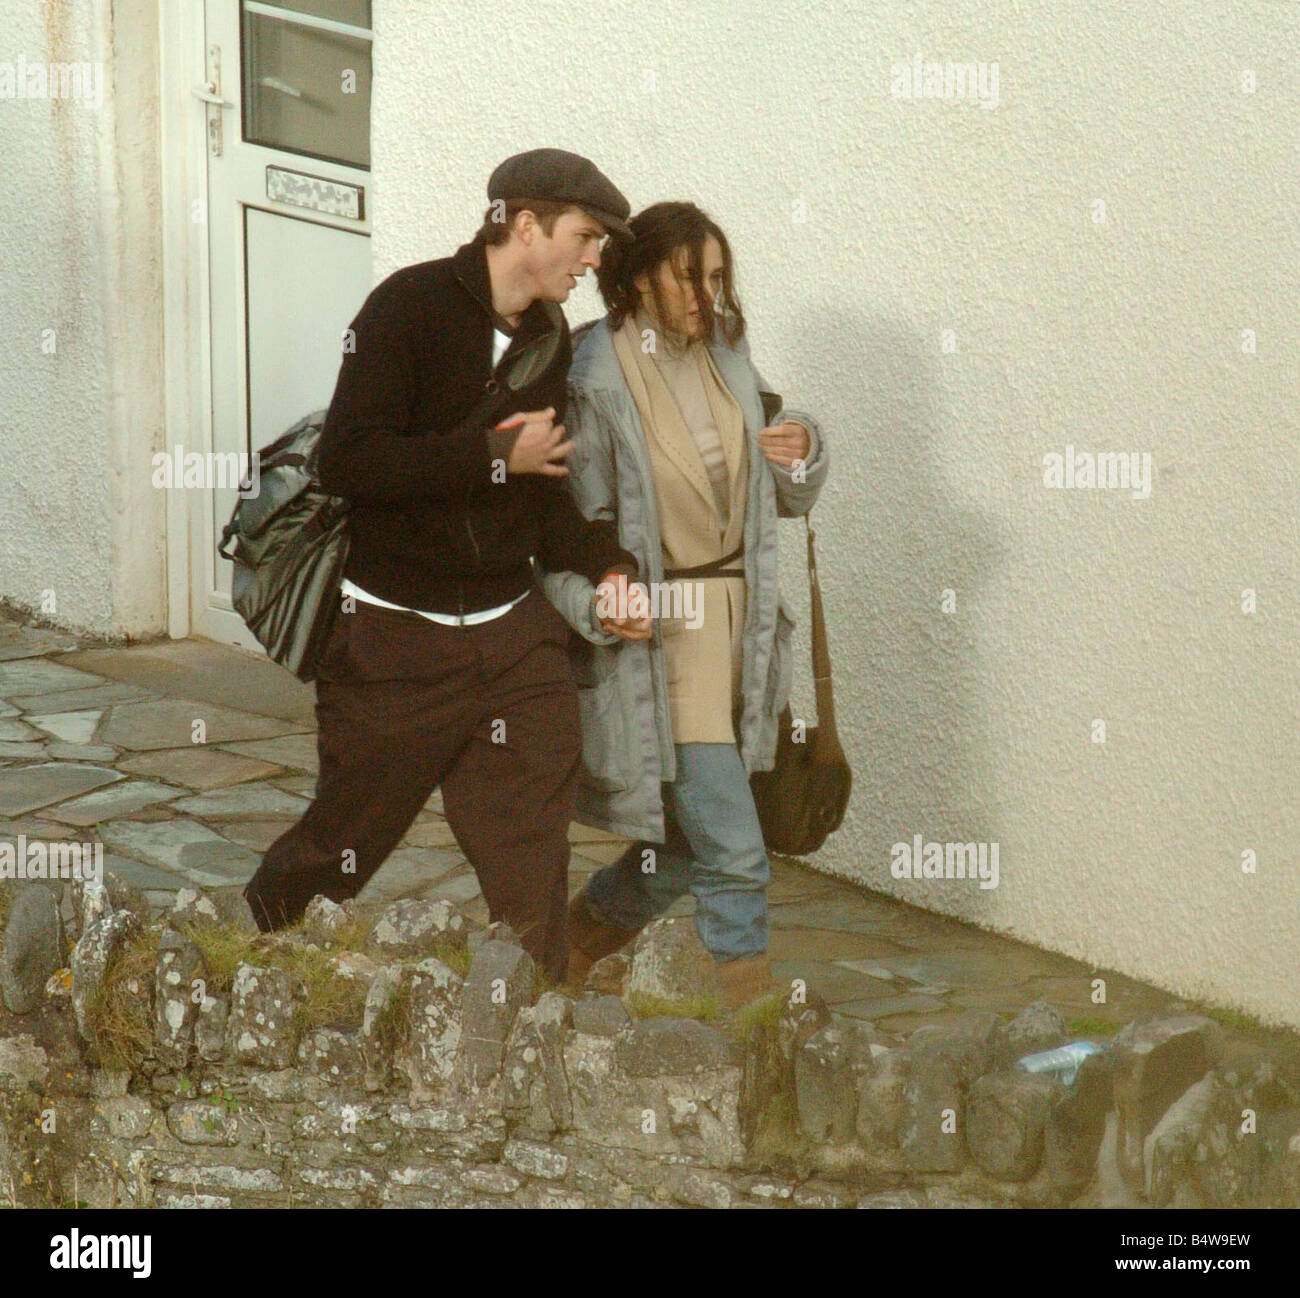 Demi Moore 41 mit Freund Ashton Kutcher 26 am Set Ihres neuen film halbes Licht, das derzeit in der kleinen Ortschaft Millook an der Nordküste Cornish 6. September 2004 gefilmt wird Schauspieler Schauspielerin Stockfoto